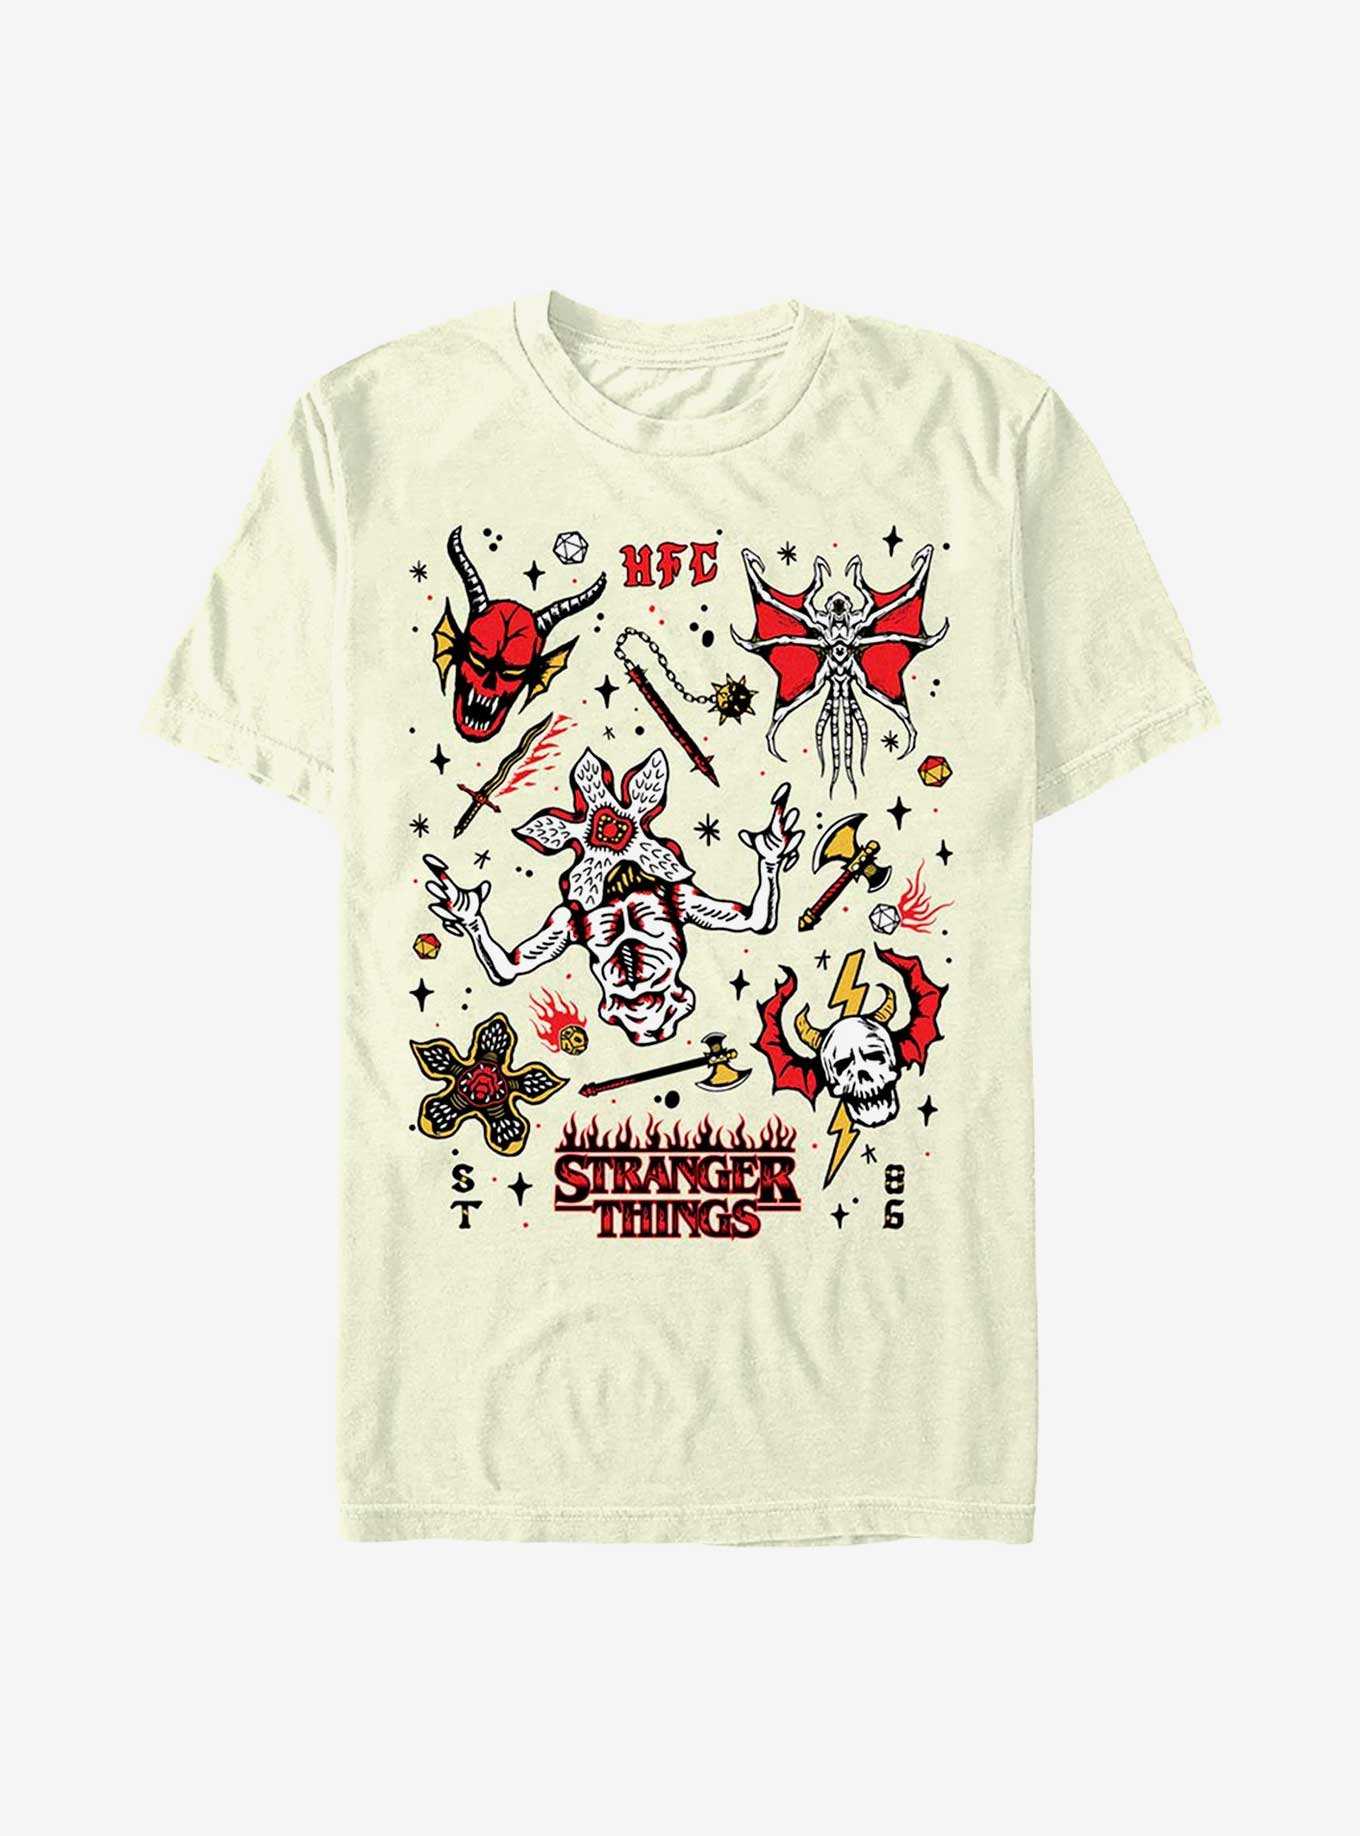 Stranger Things T-Shirt Hellfire Club Heroes Inc - Vendiloshop